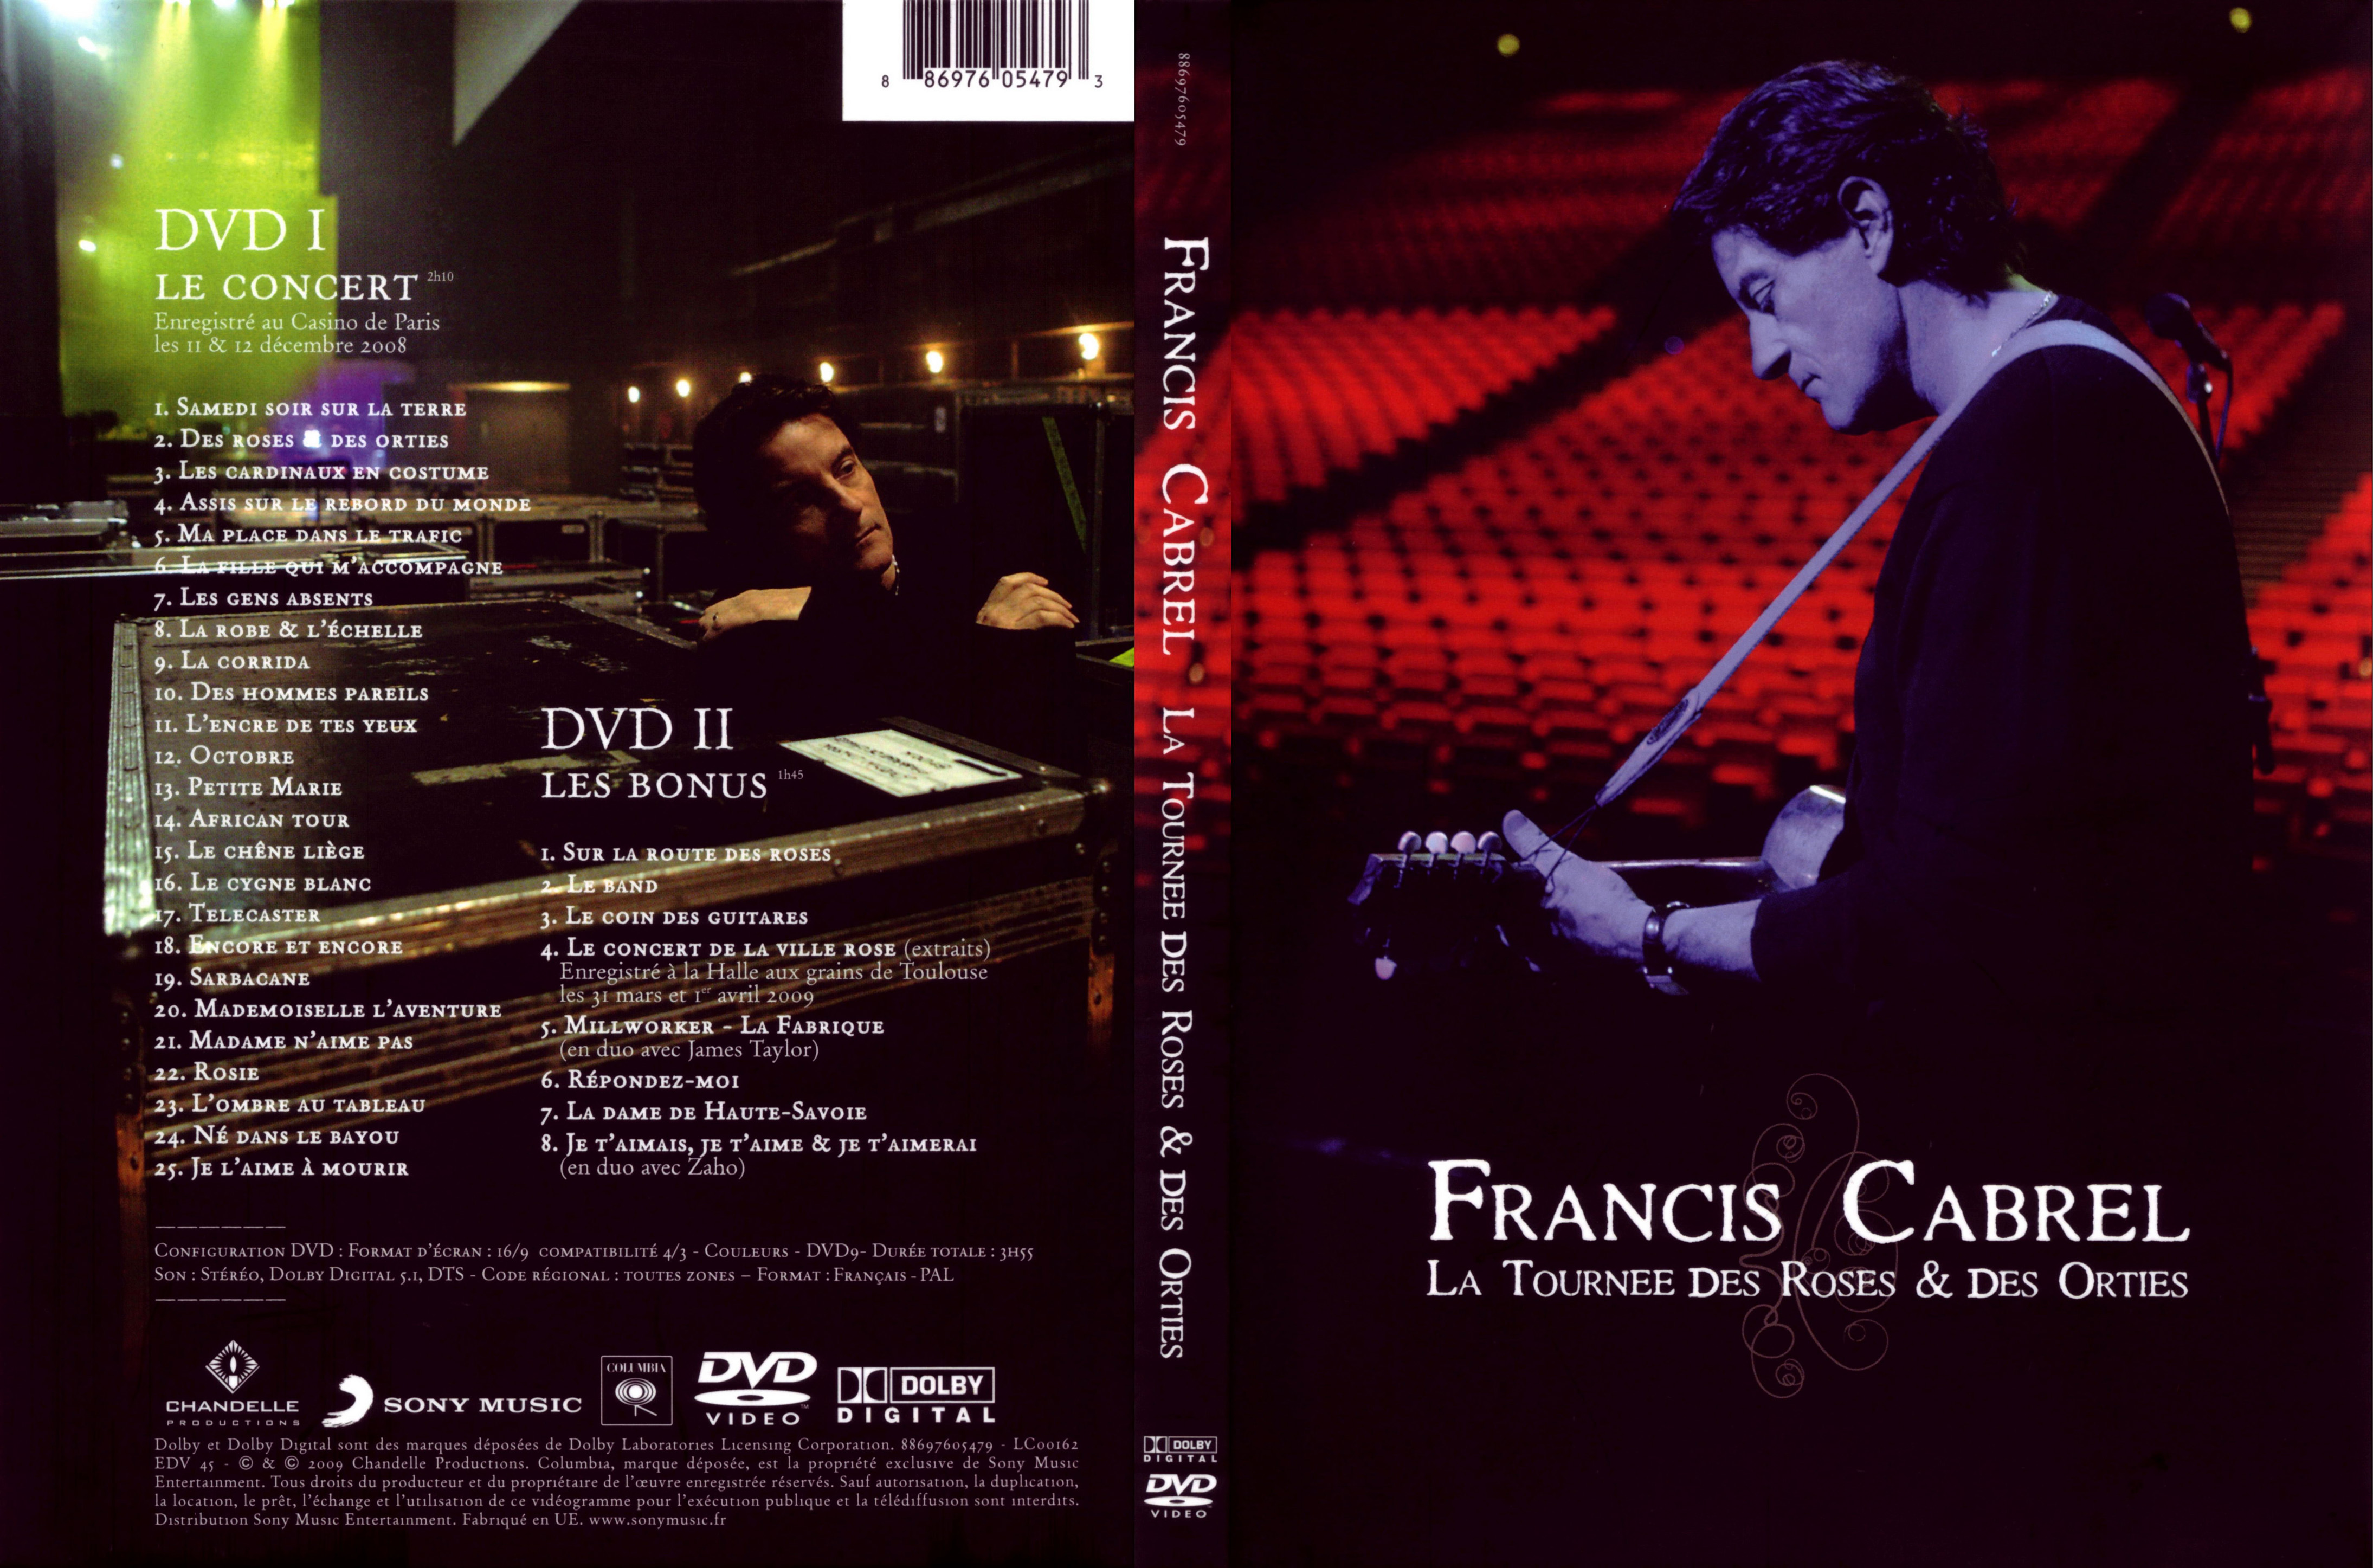 Jaquette DVD Francis Cabrel La tourne des roses et des orties